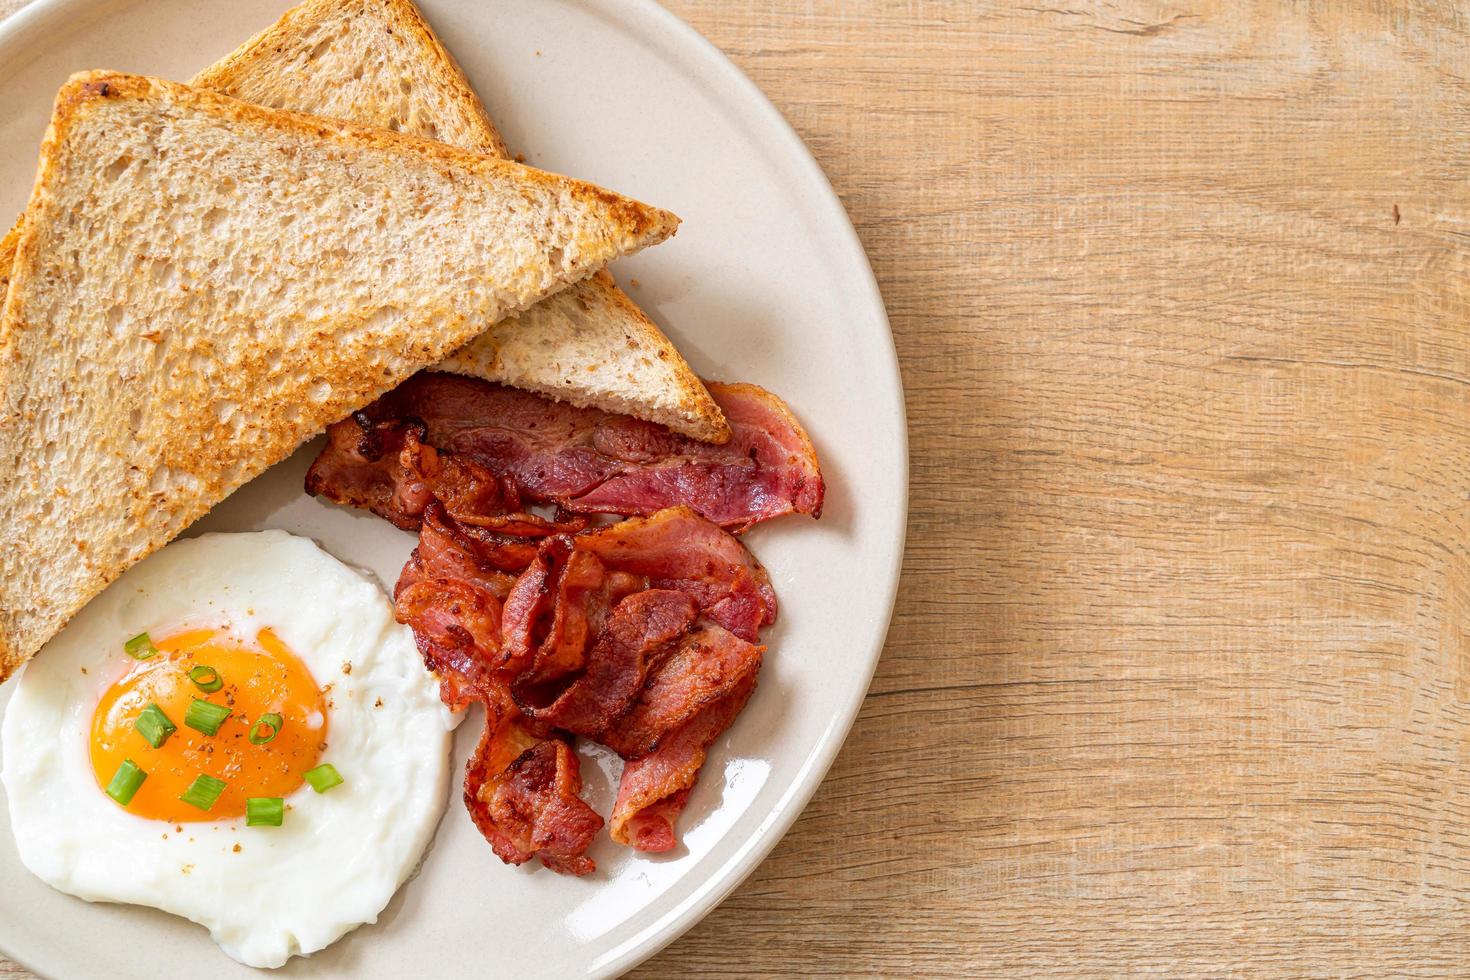 ovo frito com pão torrado e bacon no café da manhã foto